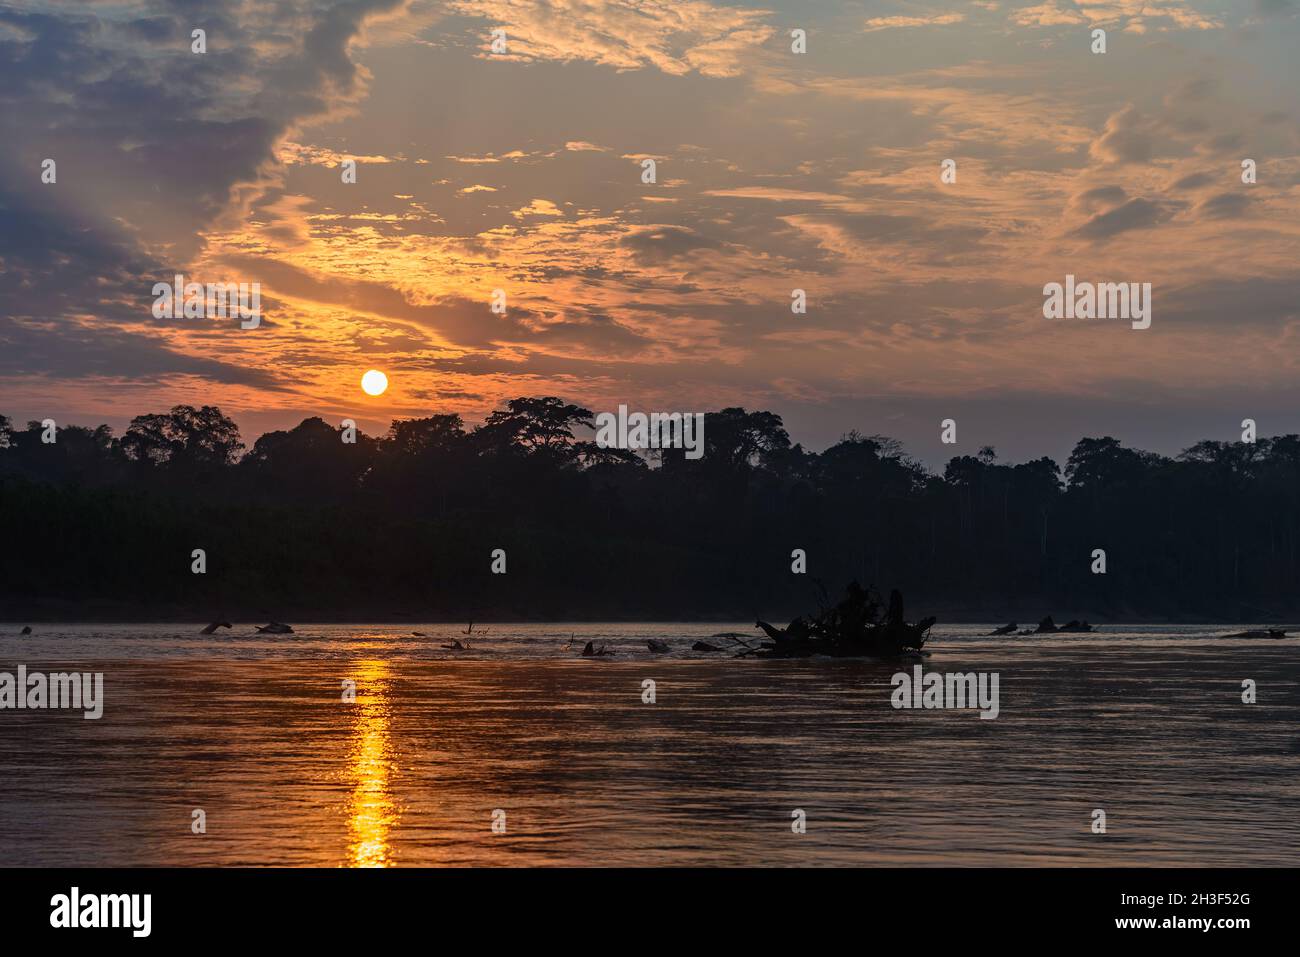 Farbenfroher Sonnenuntergang am Rio Madre de Dios im peruanischen Amazonas. Madre de Dios, Peru. Stockfoto